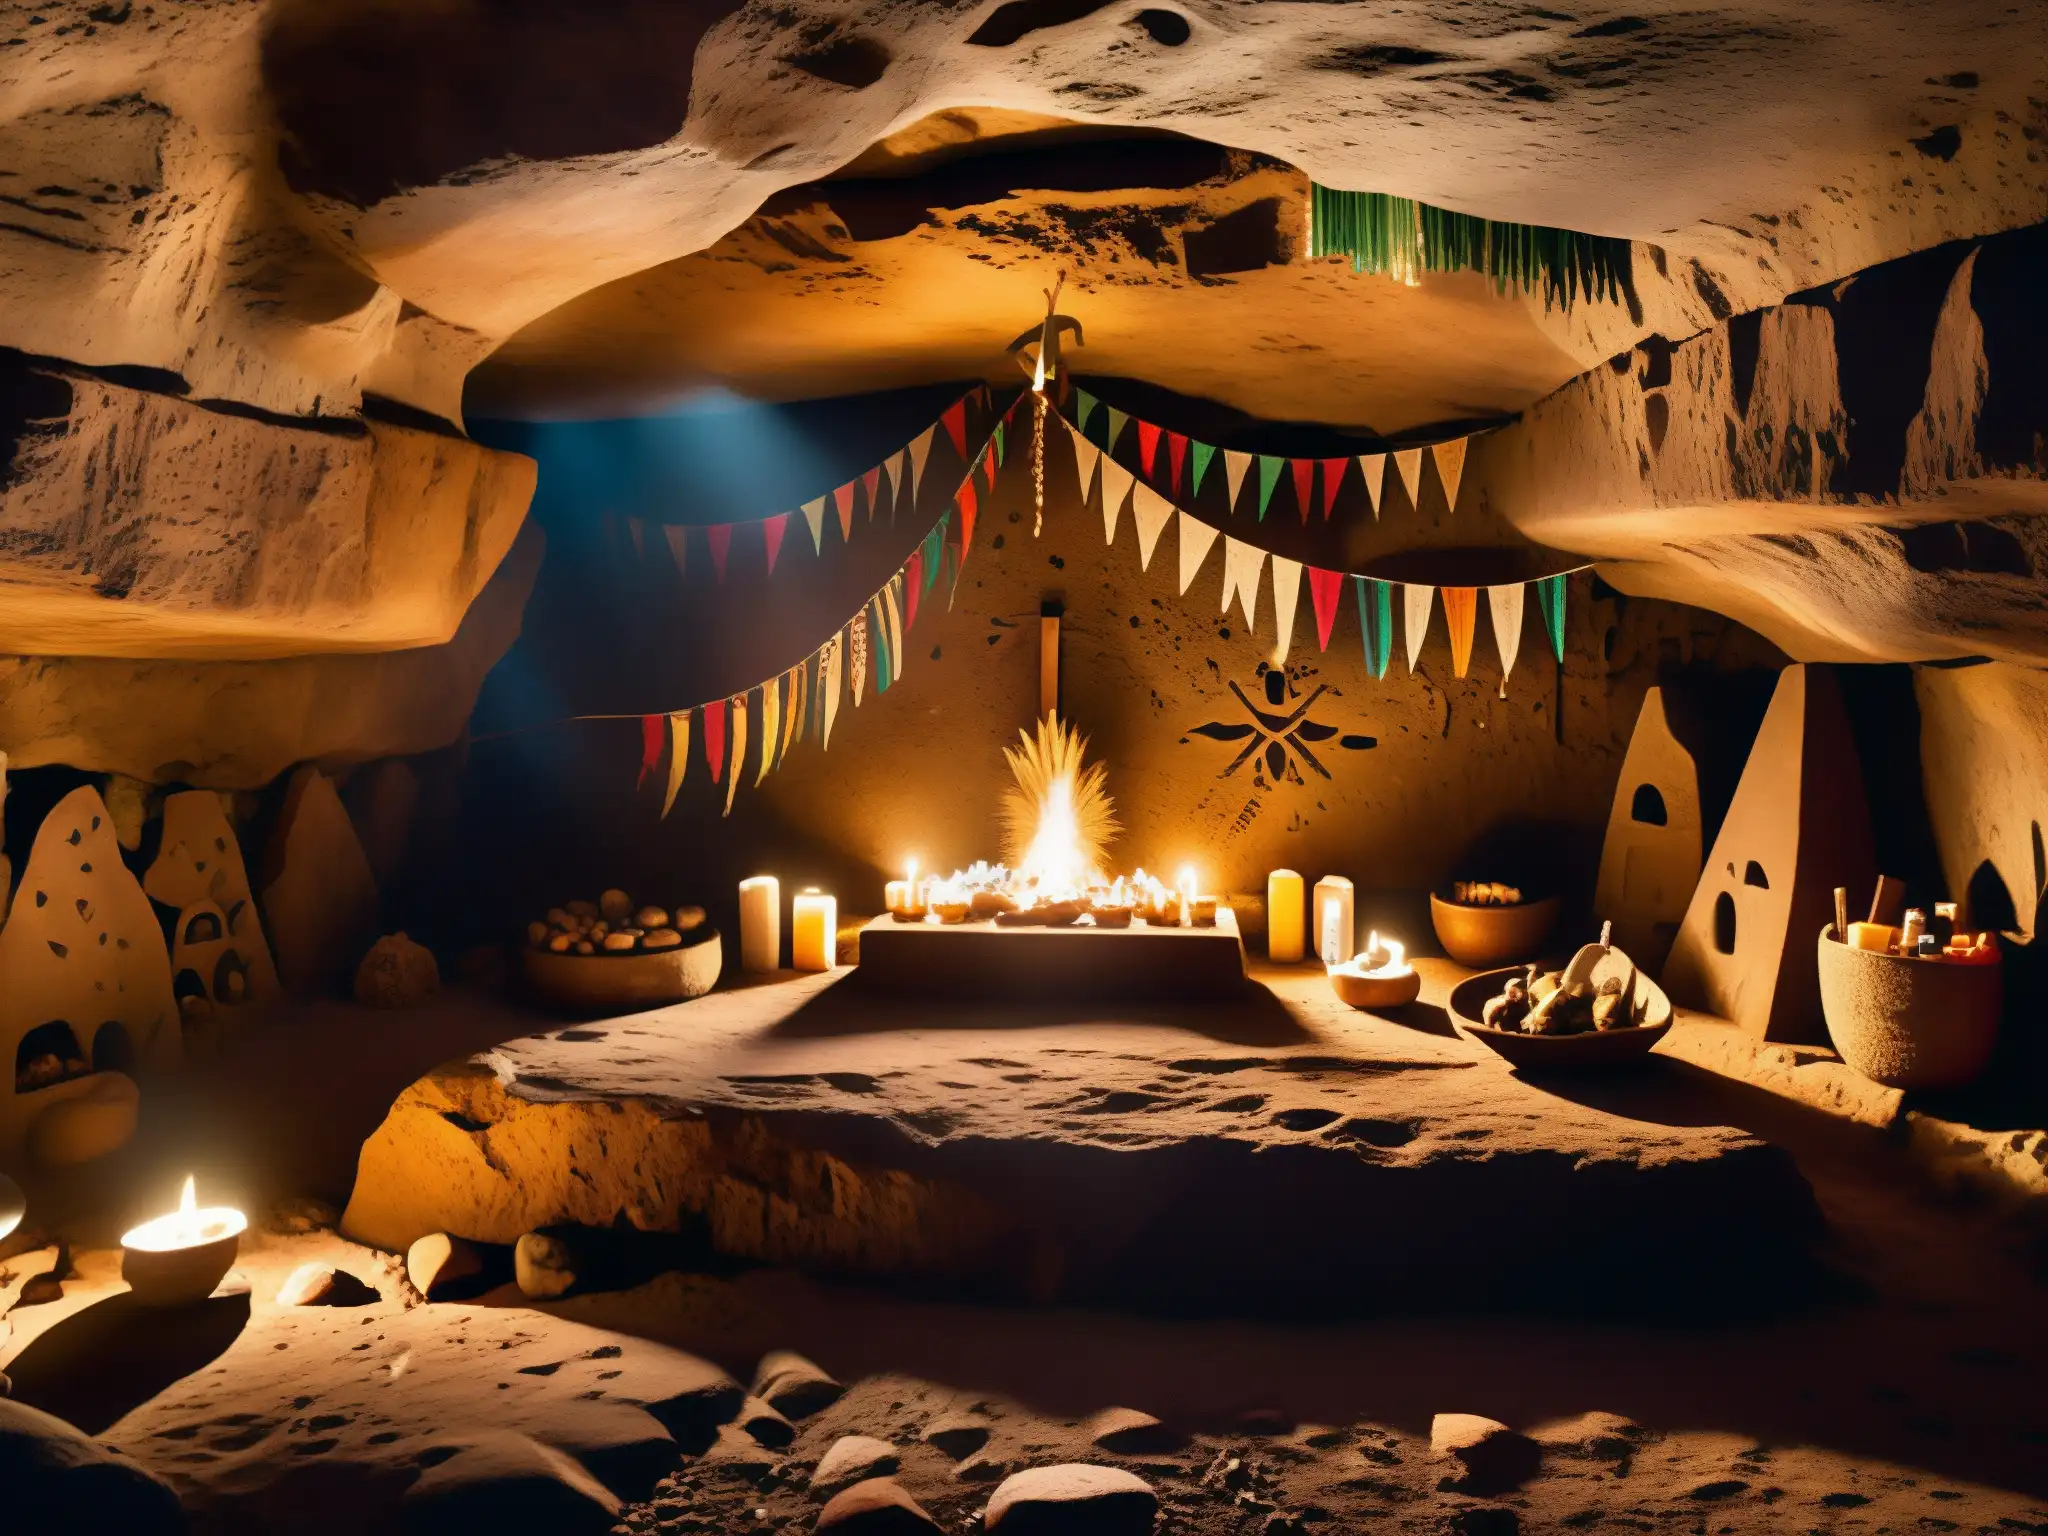 Imagen de una misteriosa cueva en las remotas montañas de Durango, México, con antiguos petroglifos que representan rituales y sacrificios ocultos